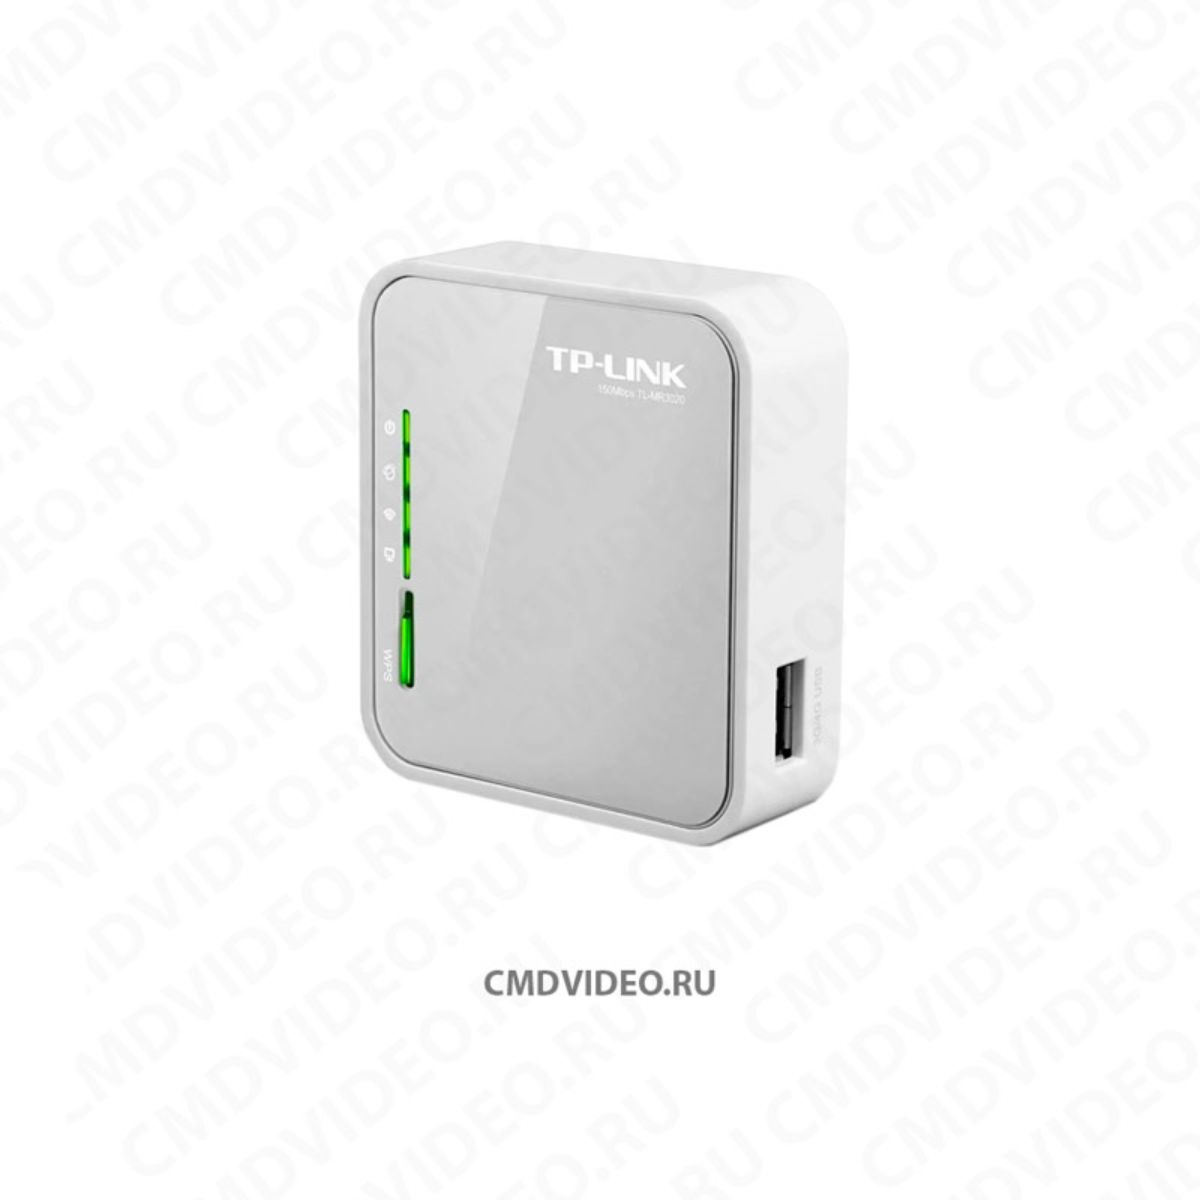 Wi-Fi роутер TP-link TL-mr3020